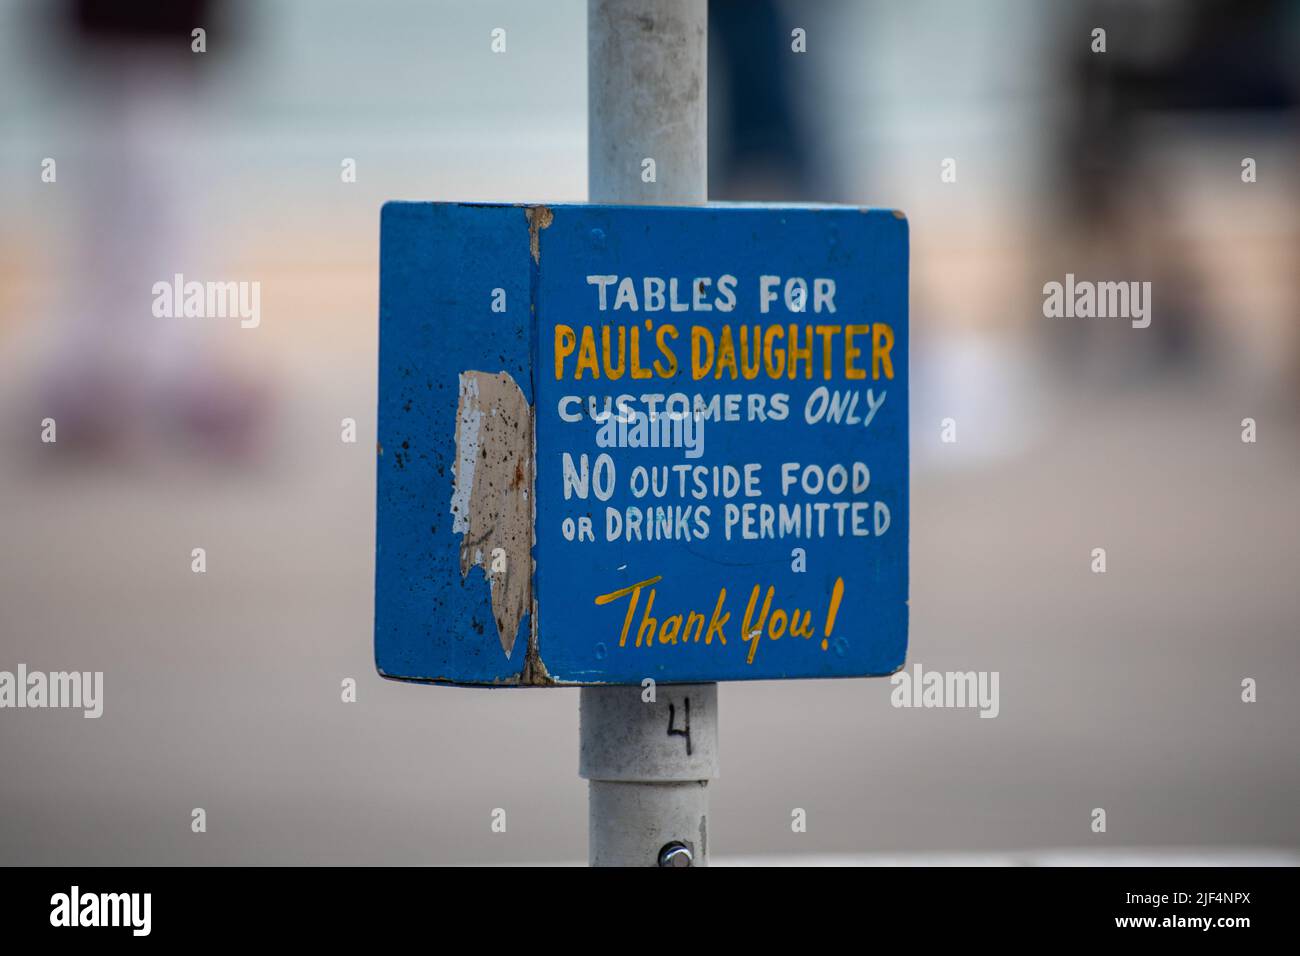 Tables pour la cliente fille de Paul uniquement. Panneau sur le parasol à l'extérieur d'un restaurant de restauration rapide dans la zone d'amusement de Coney Island. NYC, ETATS-UNIS. Banque D'Images